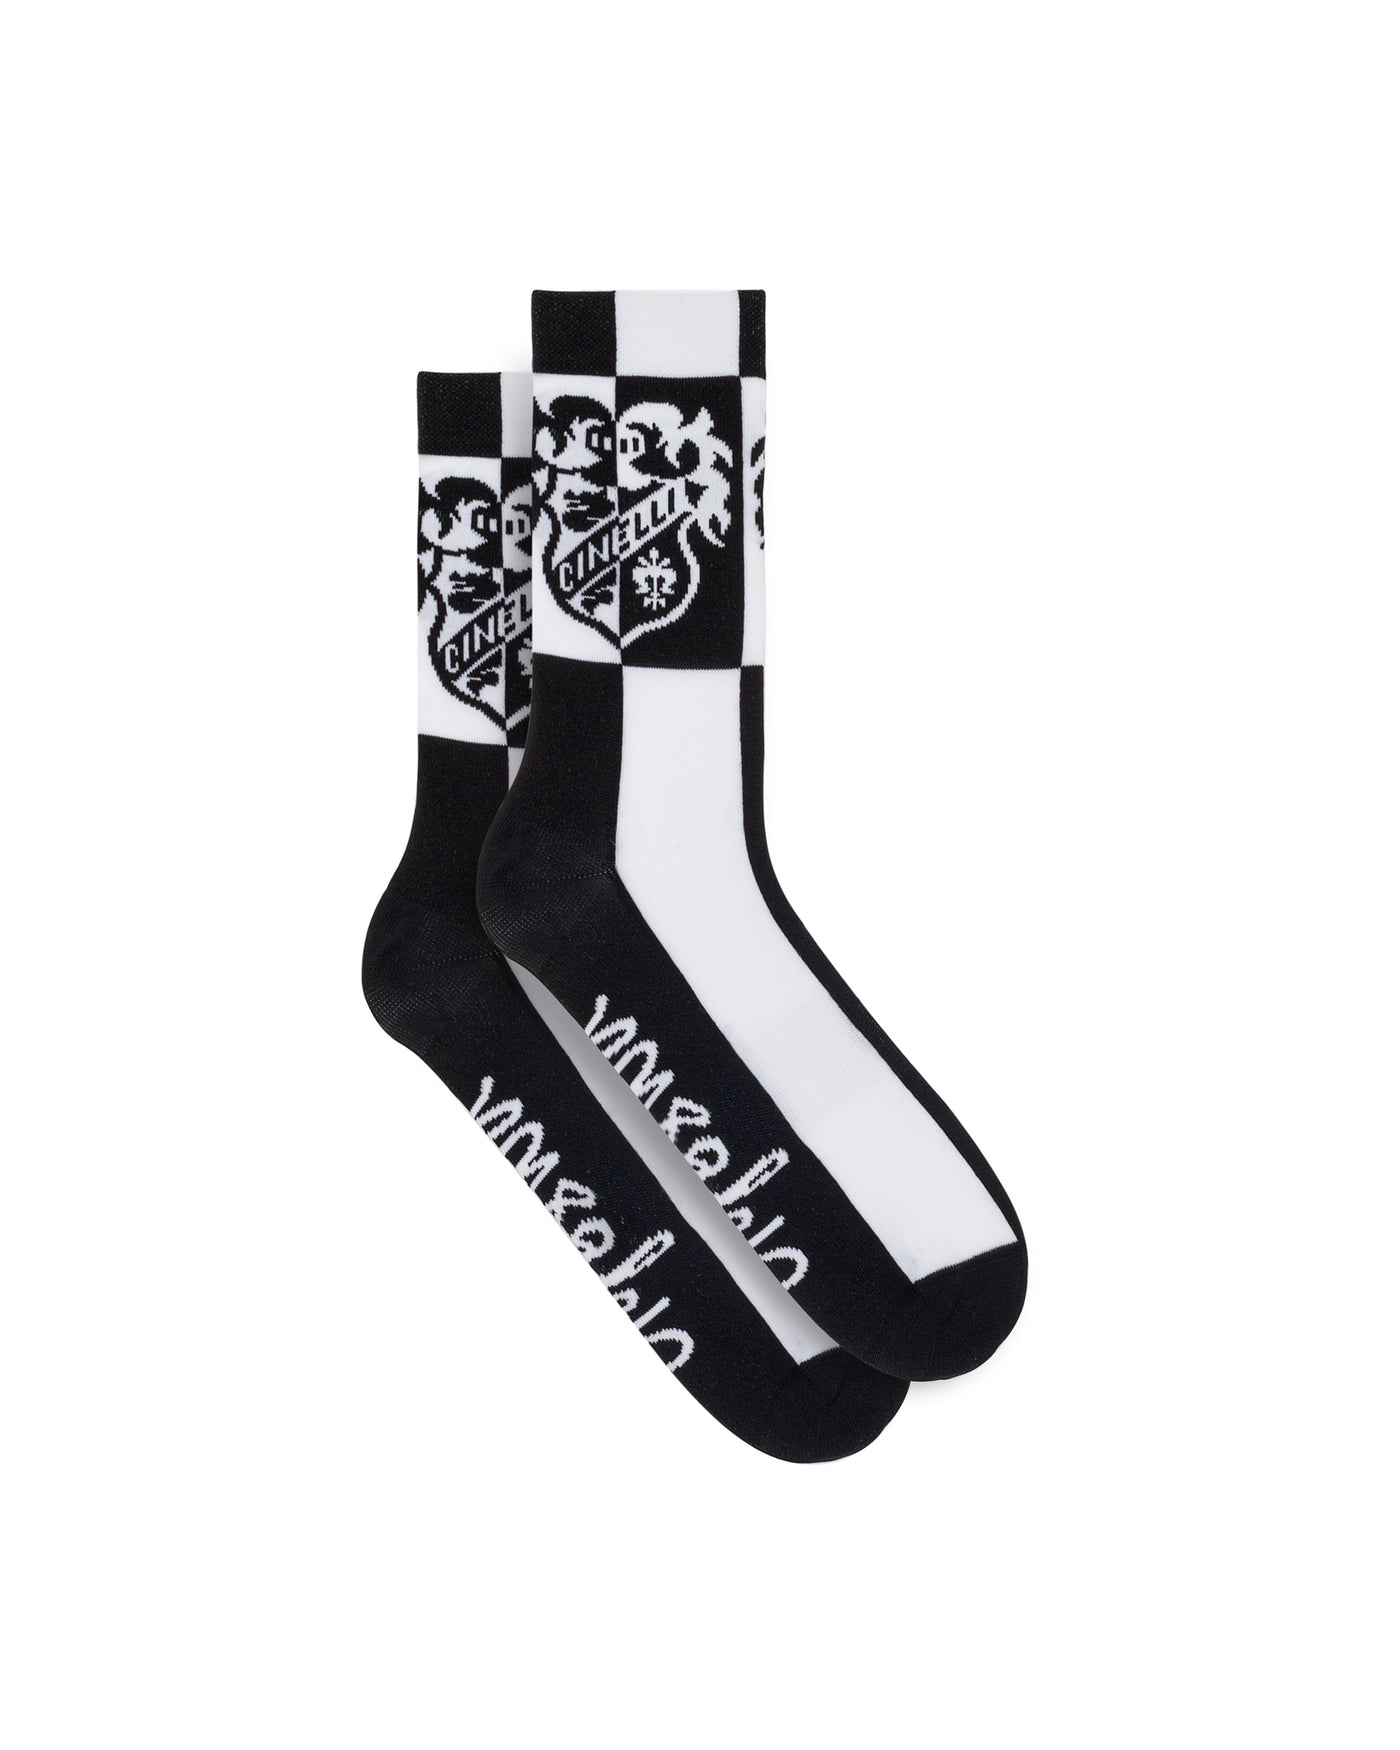 SOCKS CREST BLACK 'N' WHITE - PASTORI, Socks, IMG.1